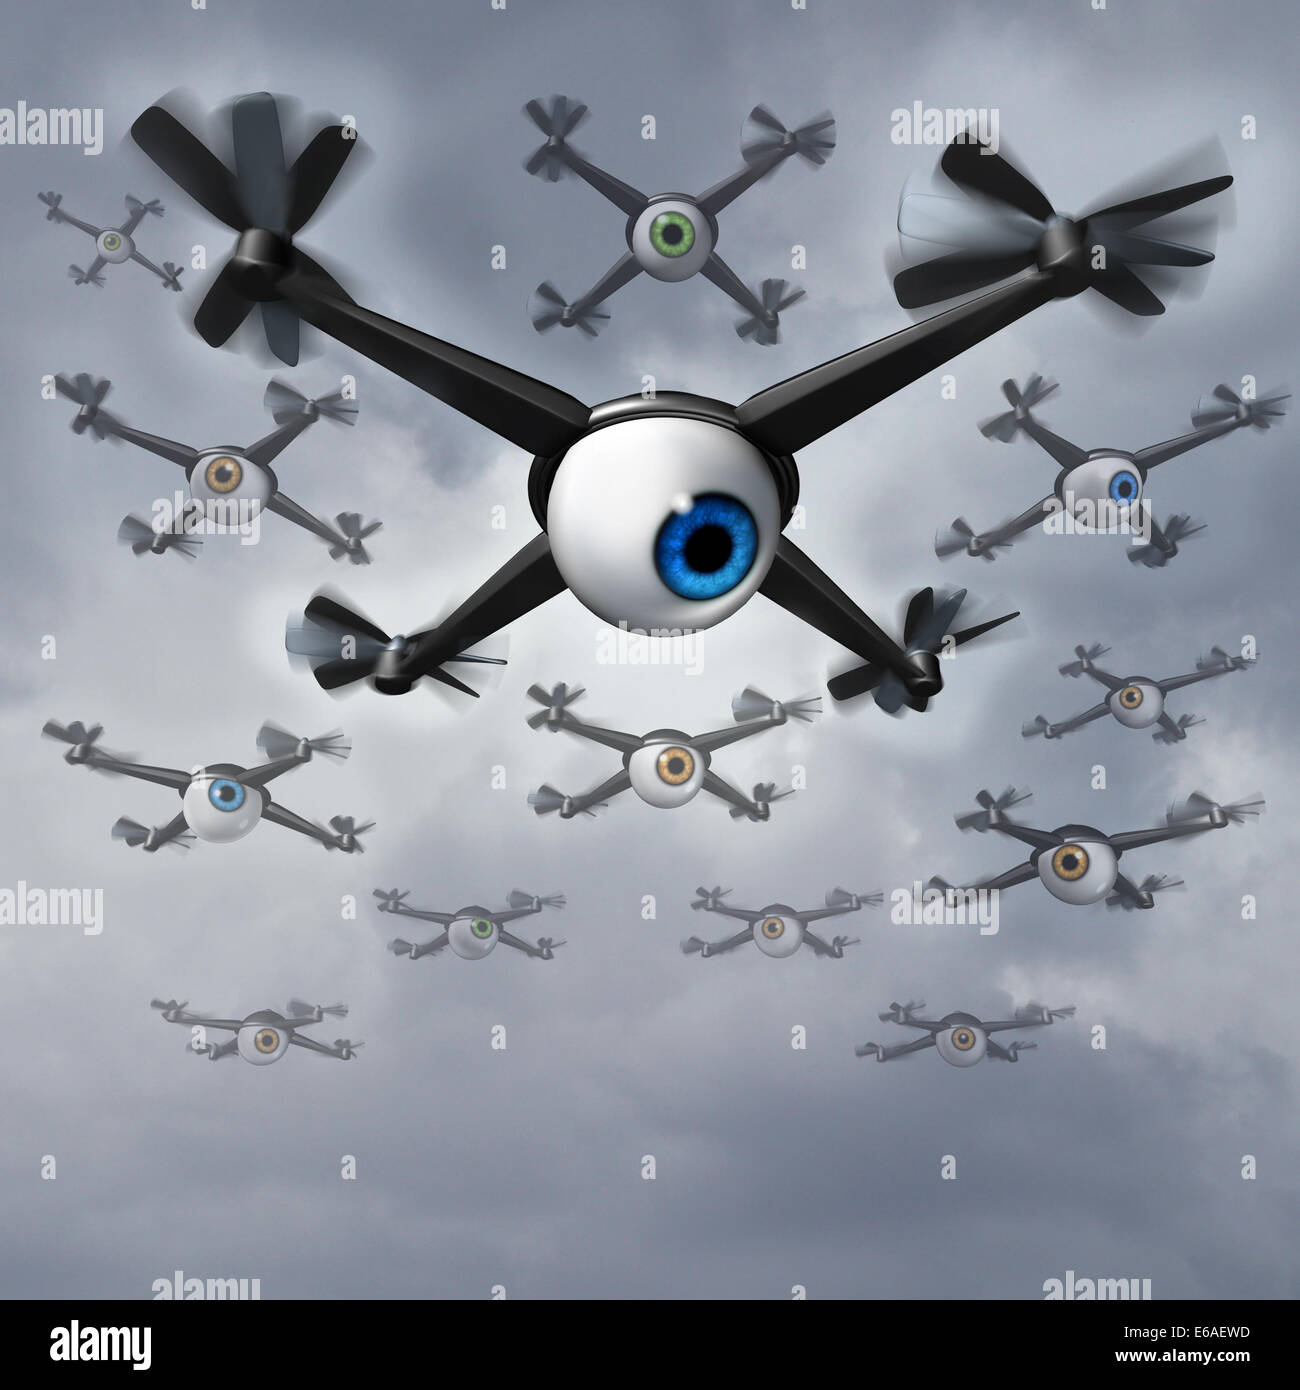 Las preocupaciones de privacidad de Drone cuestiones sociales concepto como  un grupo de spy drones con bolas de ojo humano recopila información privada  en una misión de reconocimiento y surveilliance Fotografía de